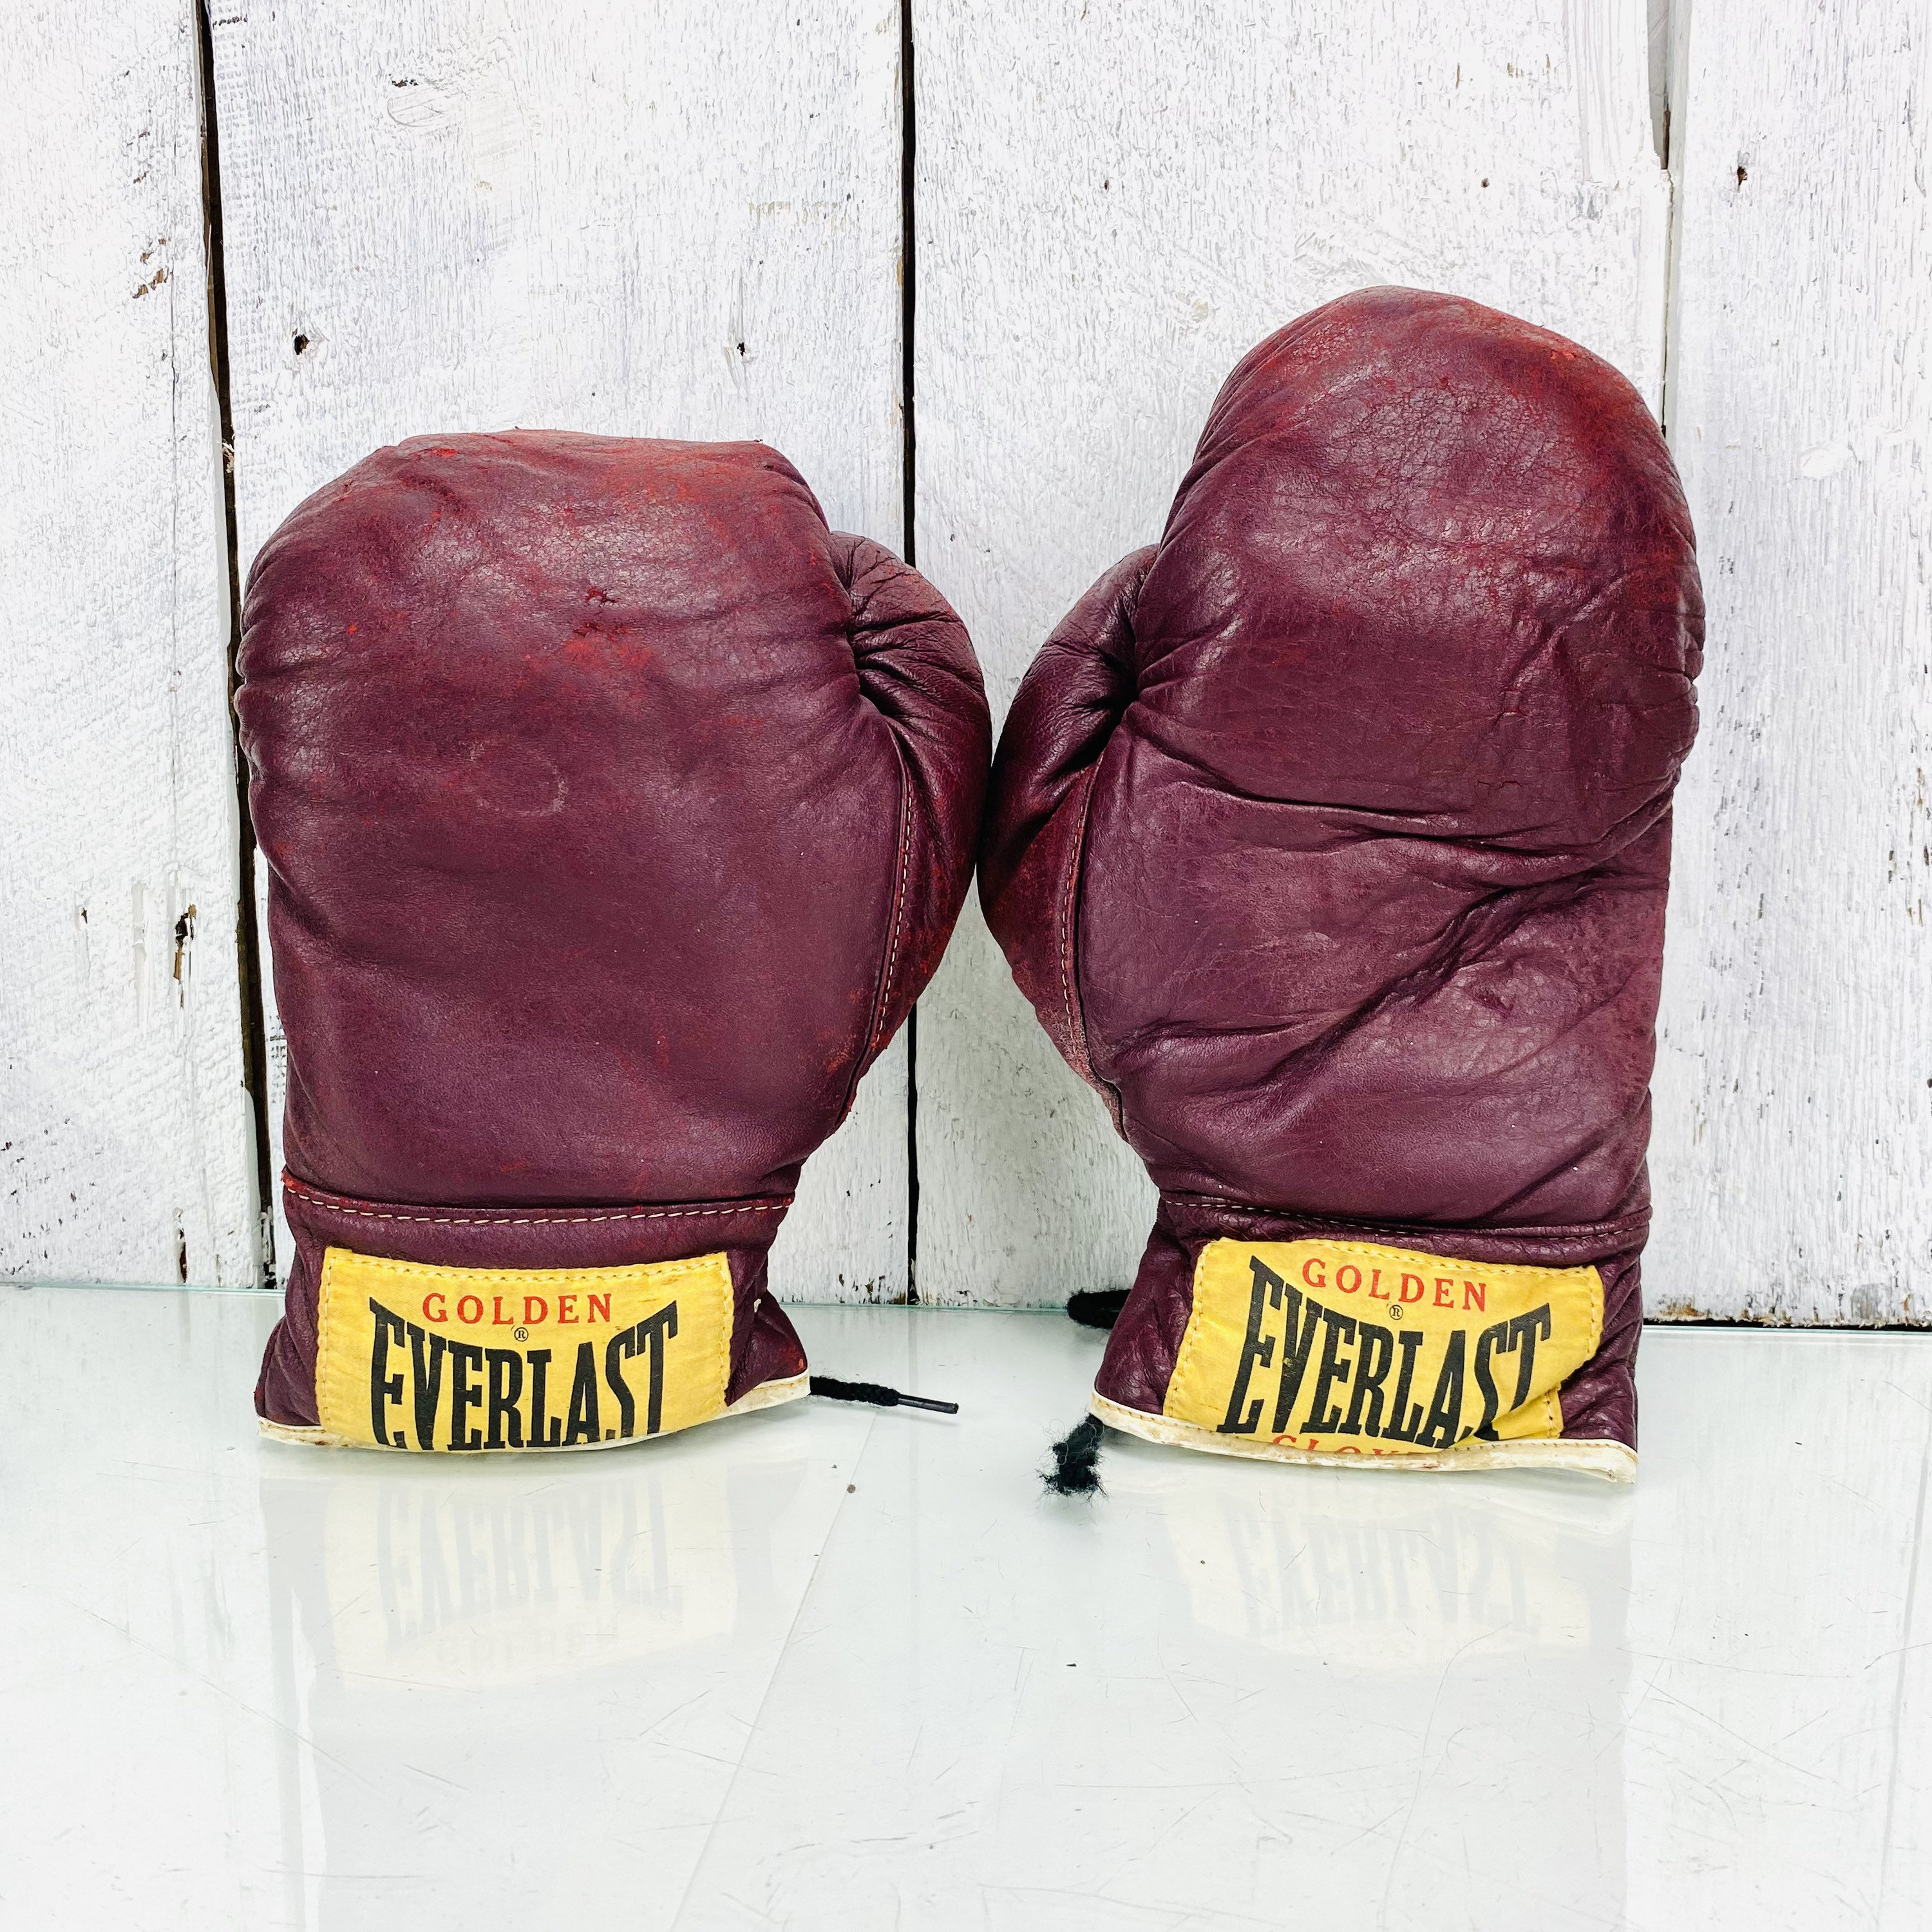 Vintage Leather Golden Everlast Boxing Glove 12oz - Etsy 日本